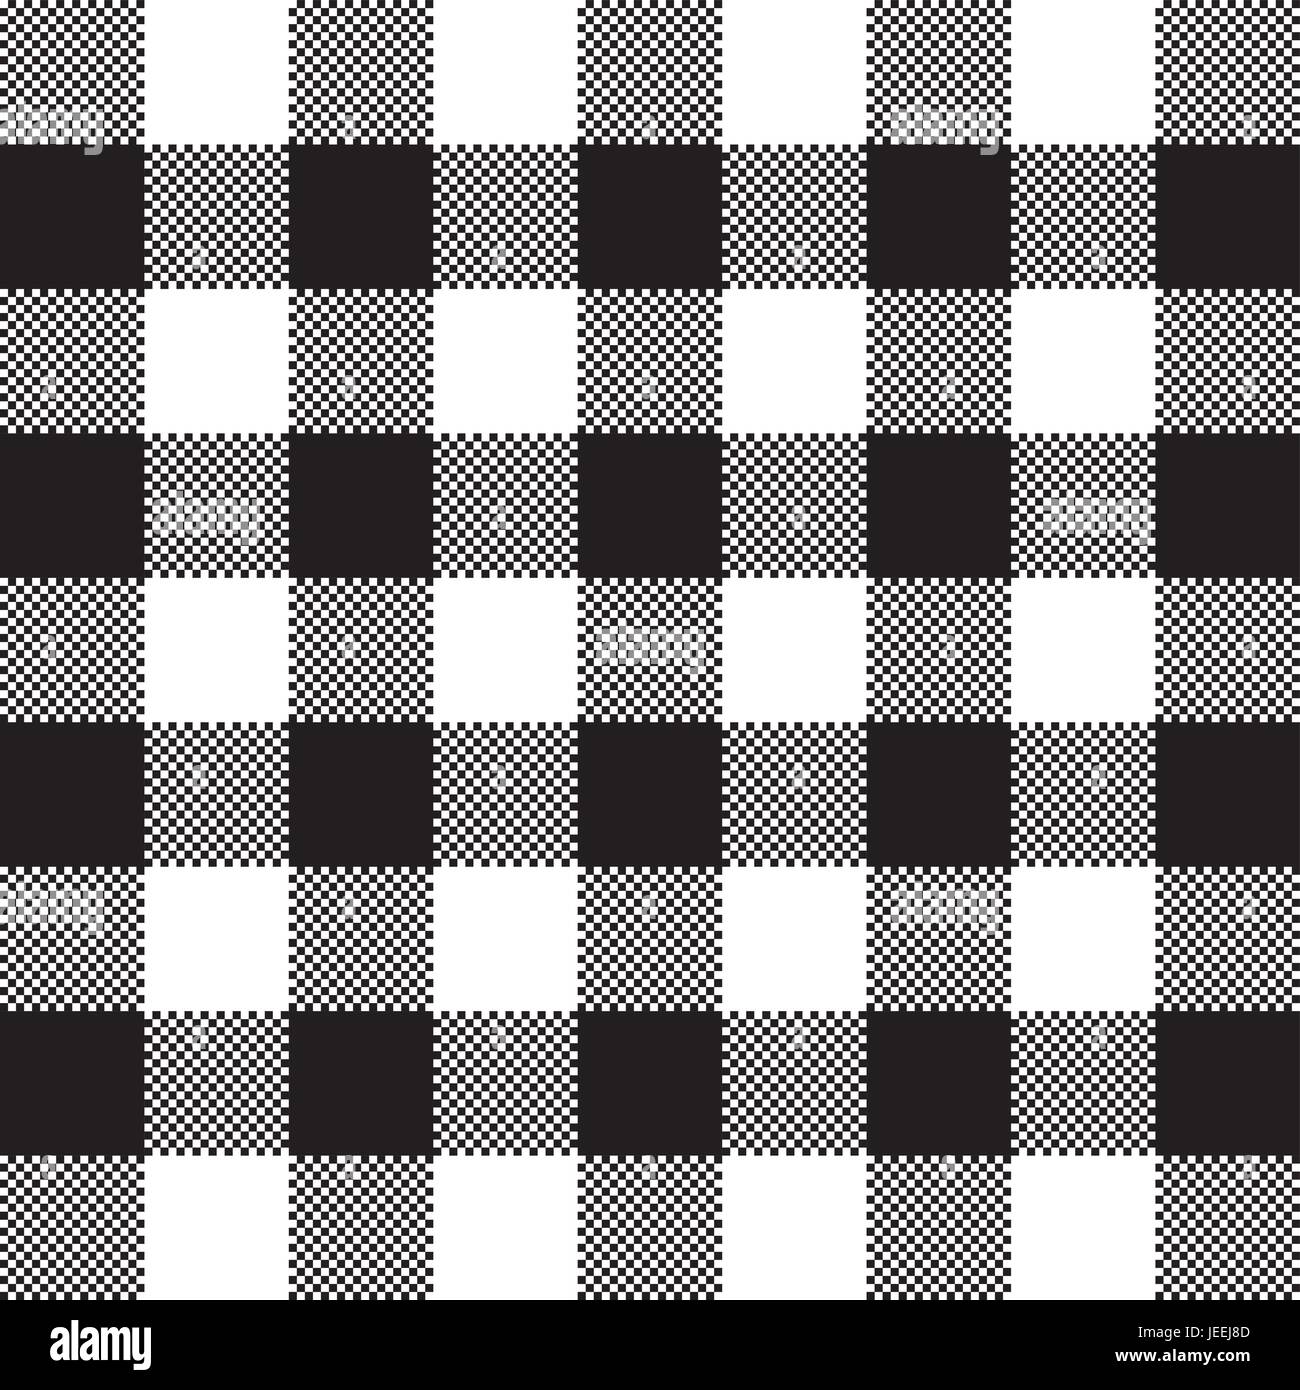 Japanische Muster nahtlos. Schwarz / weiß geometrischen Vektor und Hintergrund. Stock Vektor